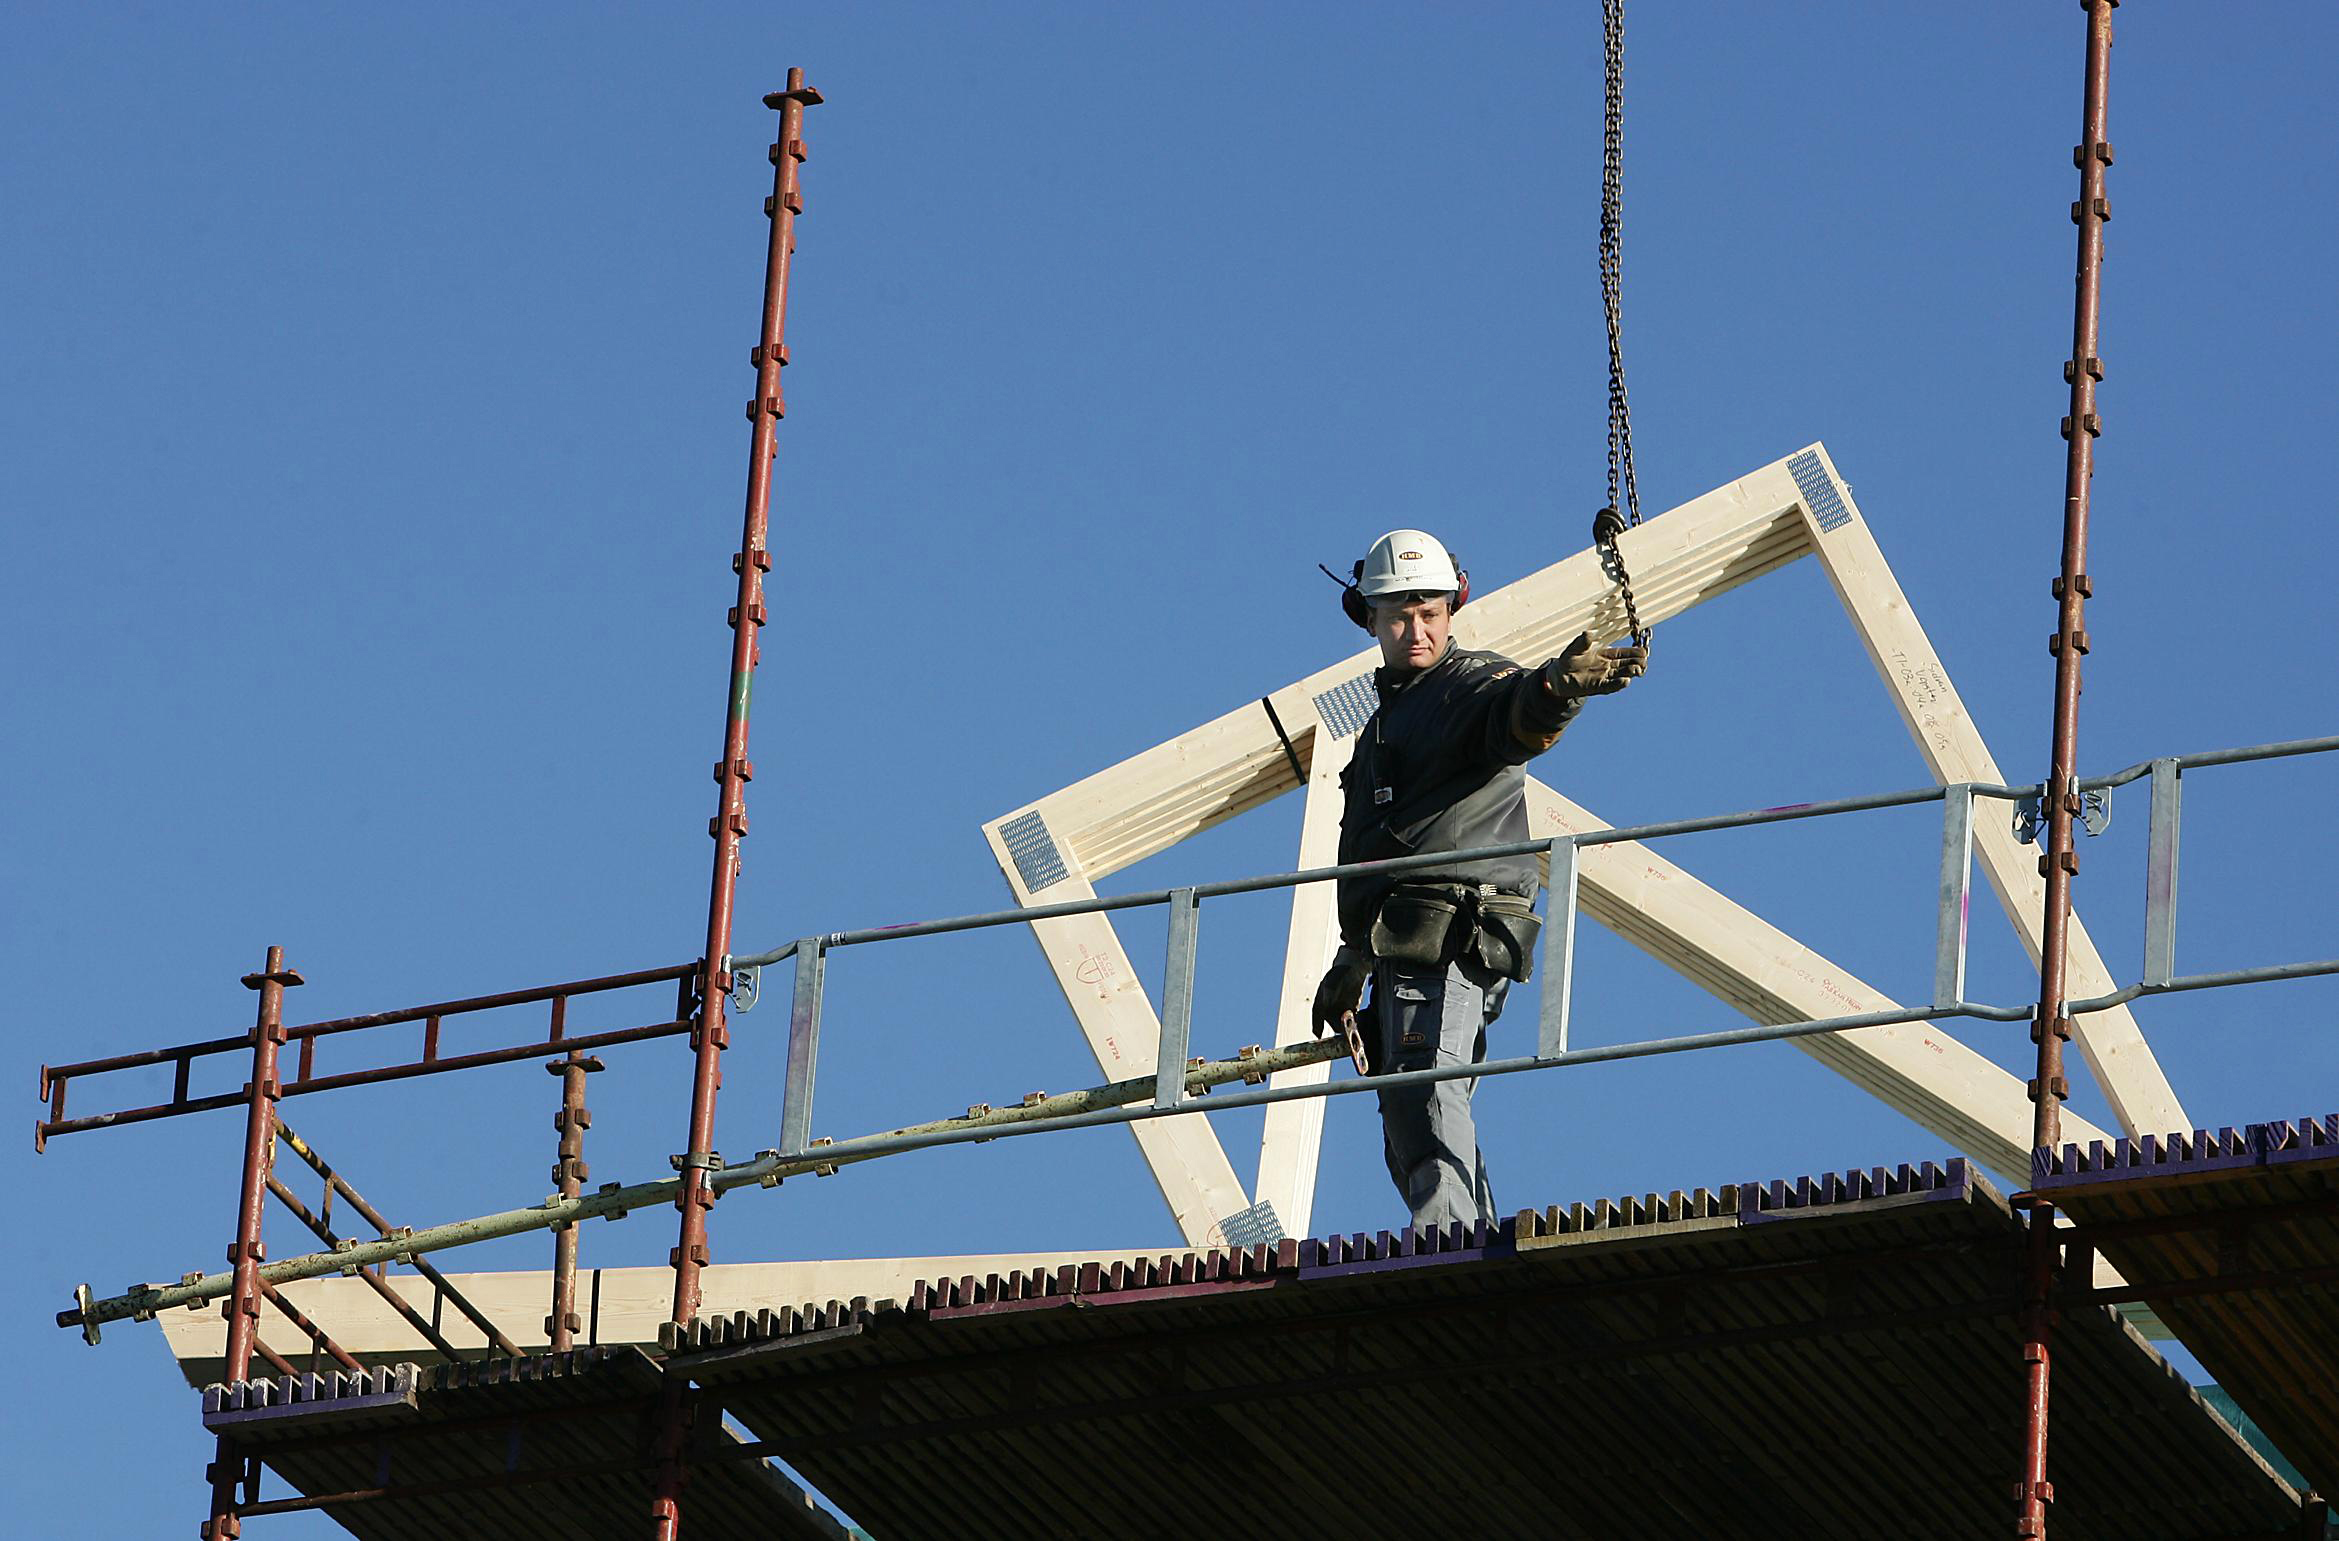 Bilden föreställer en person i vit bygghjälm som står på en byggnadsställni8ng och sträcker ut en hand. Bakom honom syns en träram som lyftas i en kedja.